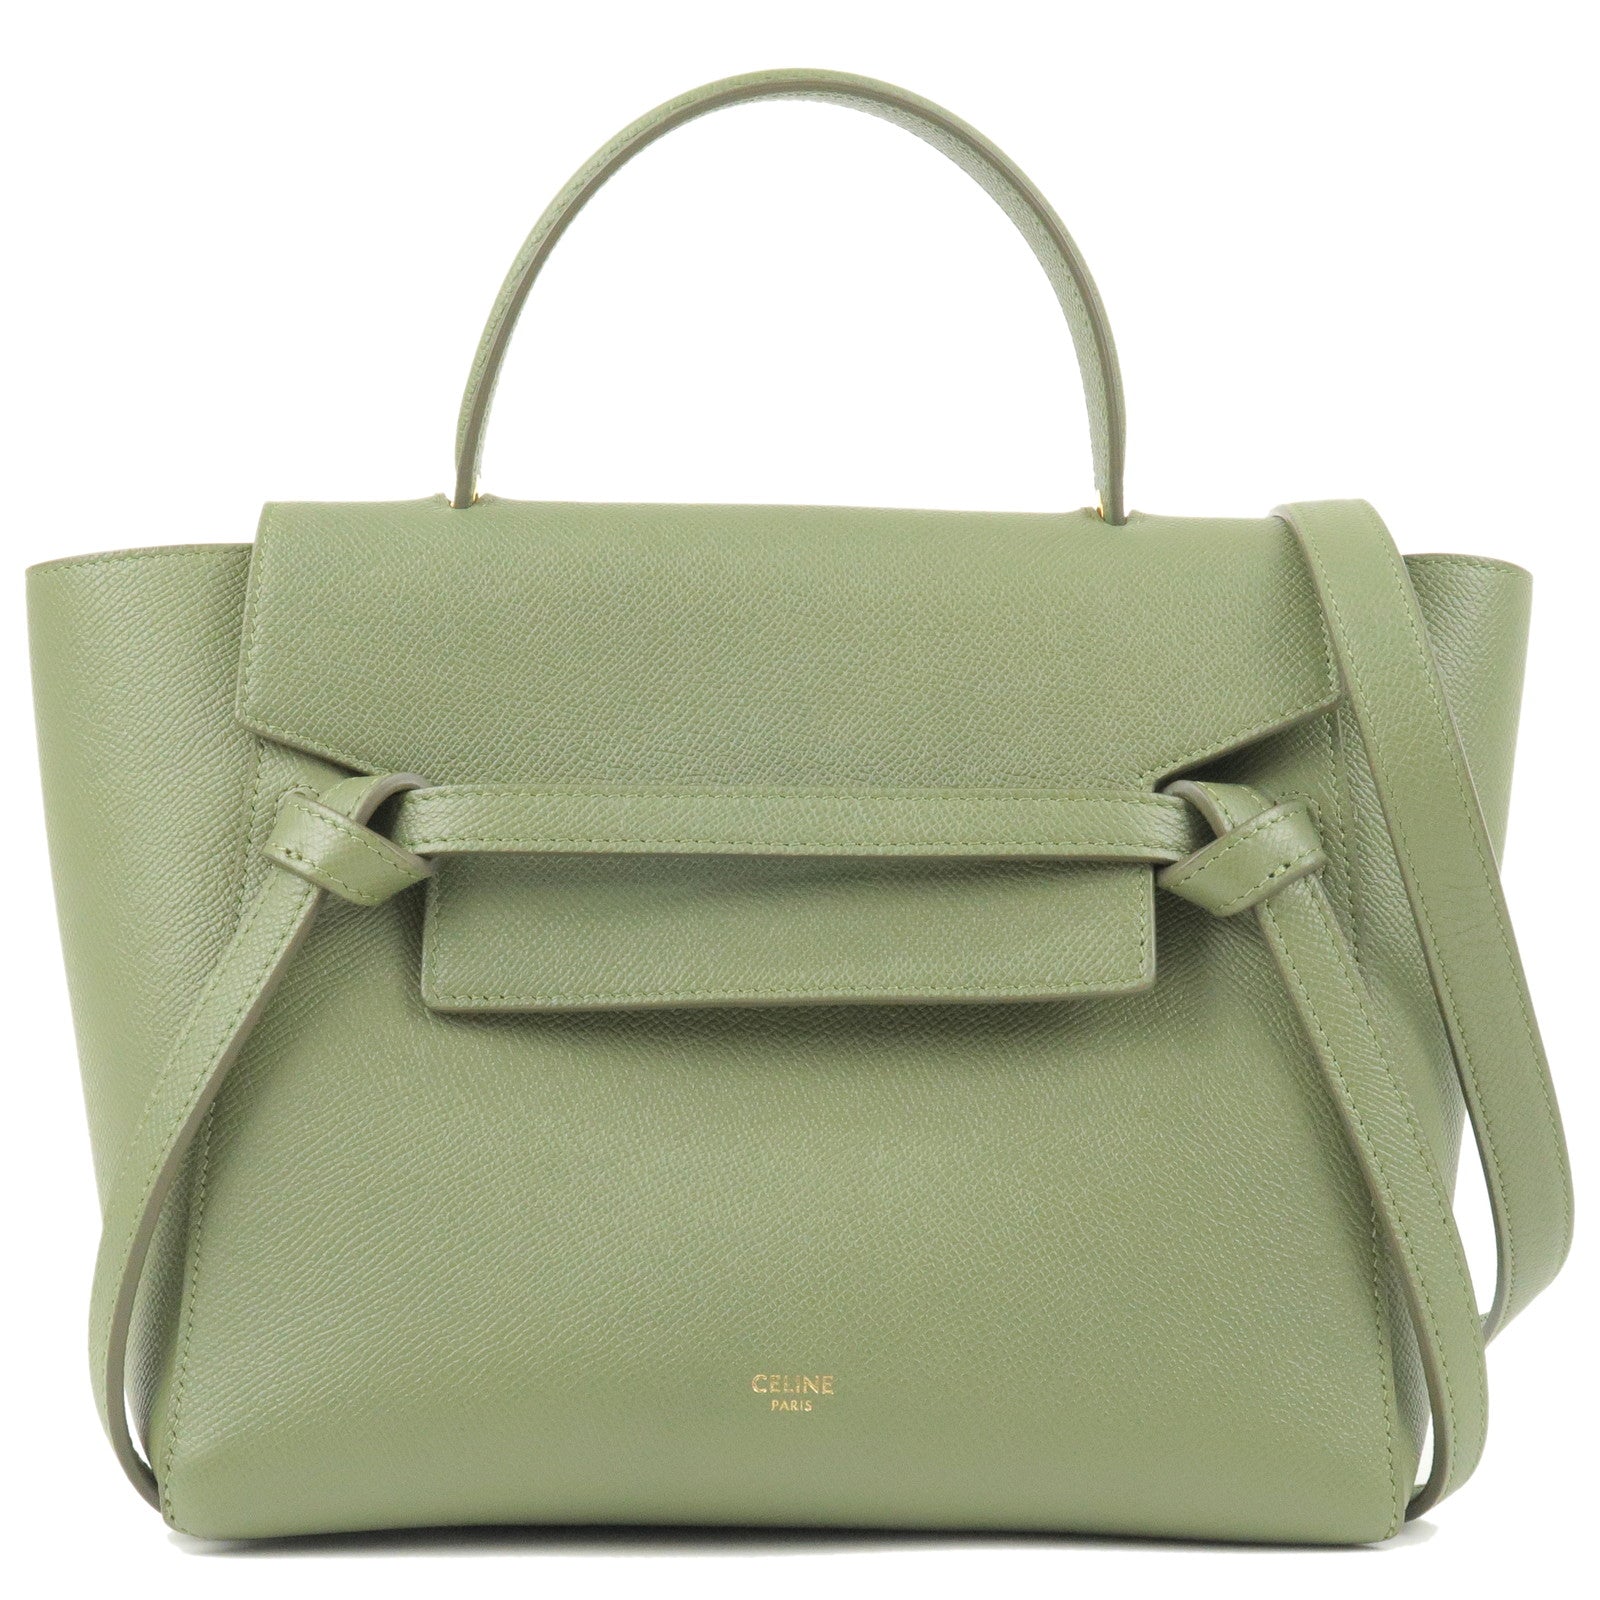 CELINE-Leather-Micro-Belt-Bag-2Way-Shoulder-Bag-Green-189153